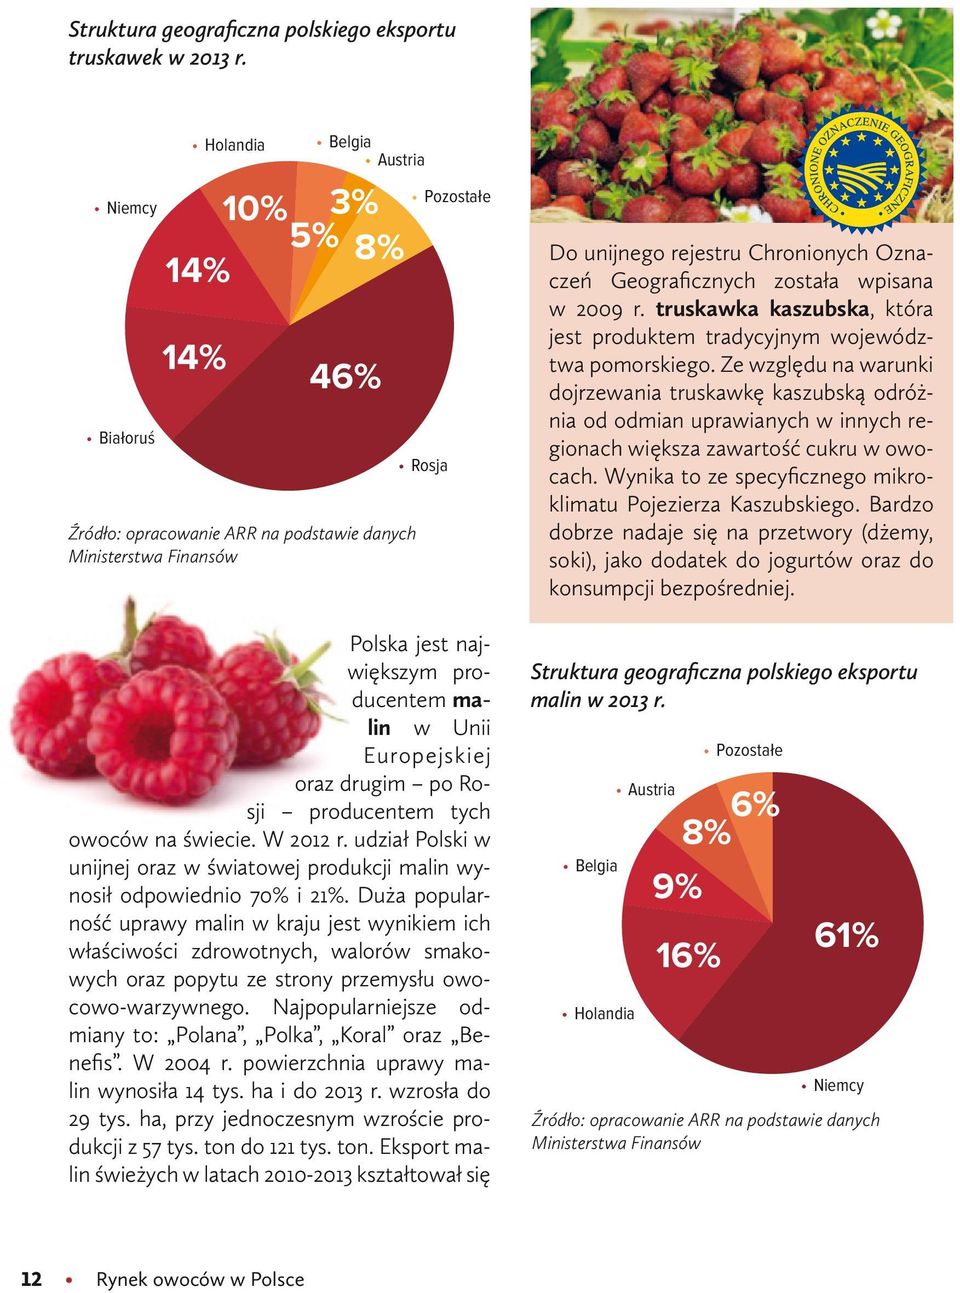 Europejskiej oraz drugim po Rosji producentem tych owoców na świecie. W 2012 r. udział Polski w unijnej oraz w światowej produkcji malin wynosił odpowiednio 70% i 21%.